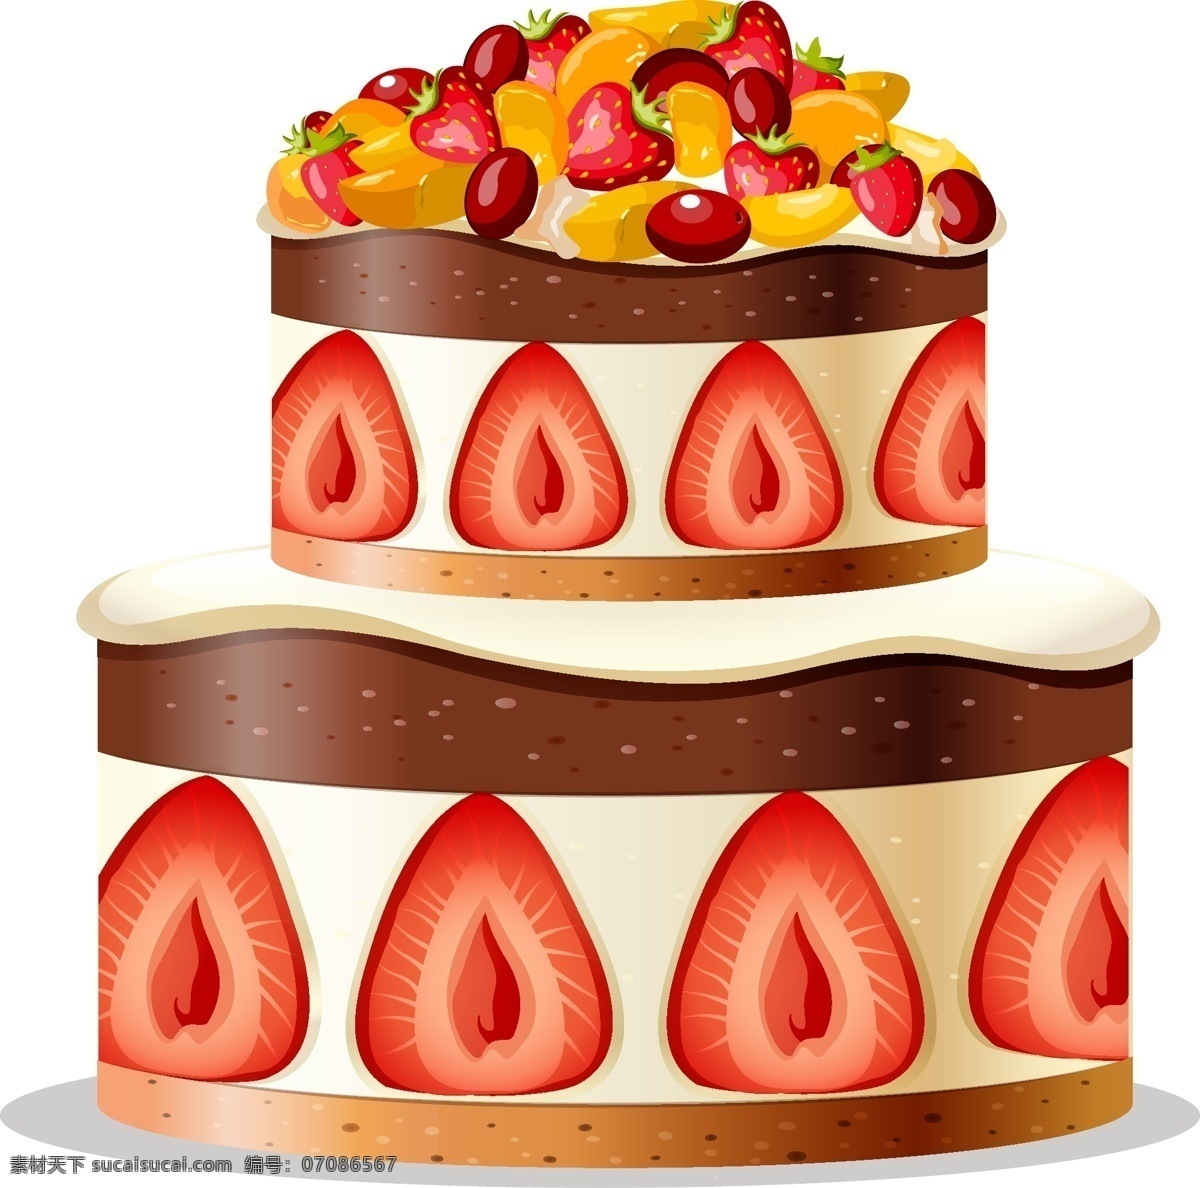 矢量 手绘 卡通 蛋糕 生日贺卡 生日海报 甜品 婚礼 卡通生日蛋糕 杯子蛋糕 手绘生日蛋糕 蛋糕设计 雕花蛋糕 节日蛋糕 儿童生日蛋糕 卡通蛋糕